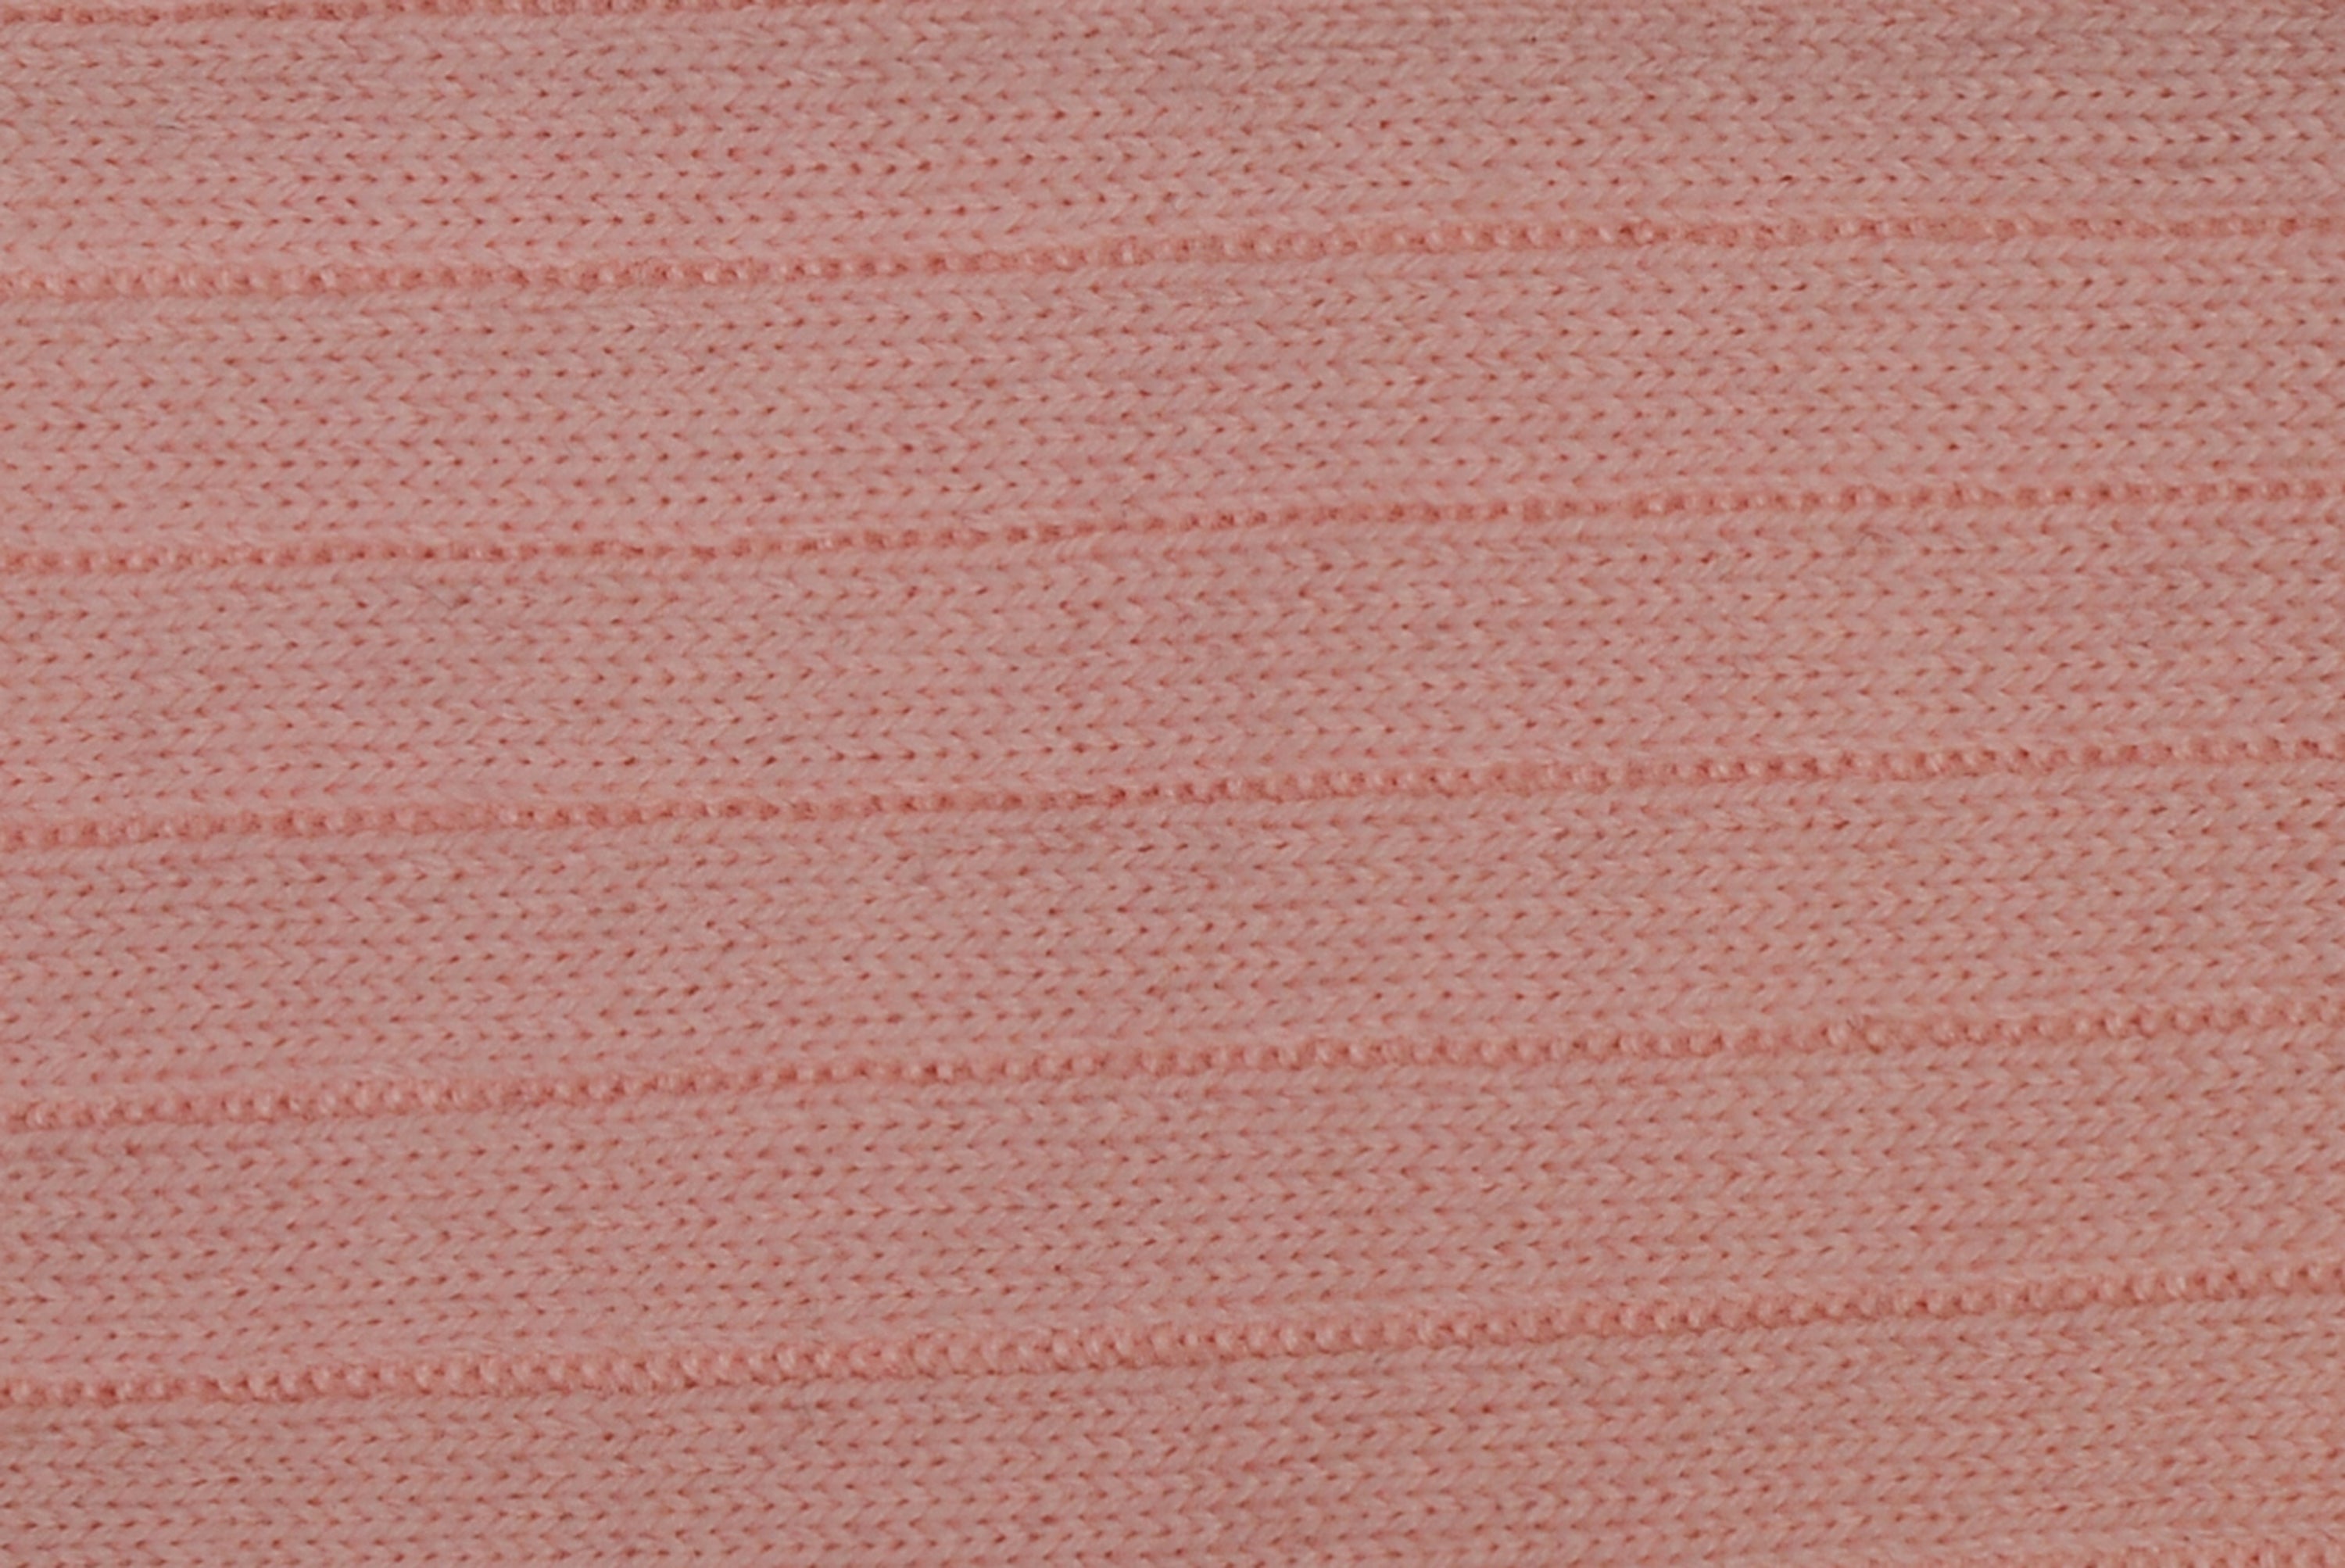 BRESCIANI For BESPOKE ATHENS Pink Wool Blend Socks NEW BRESCIANI